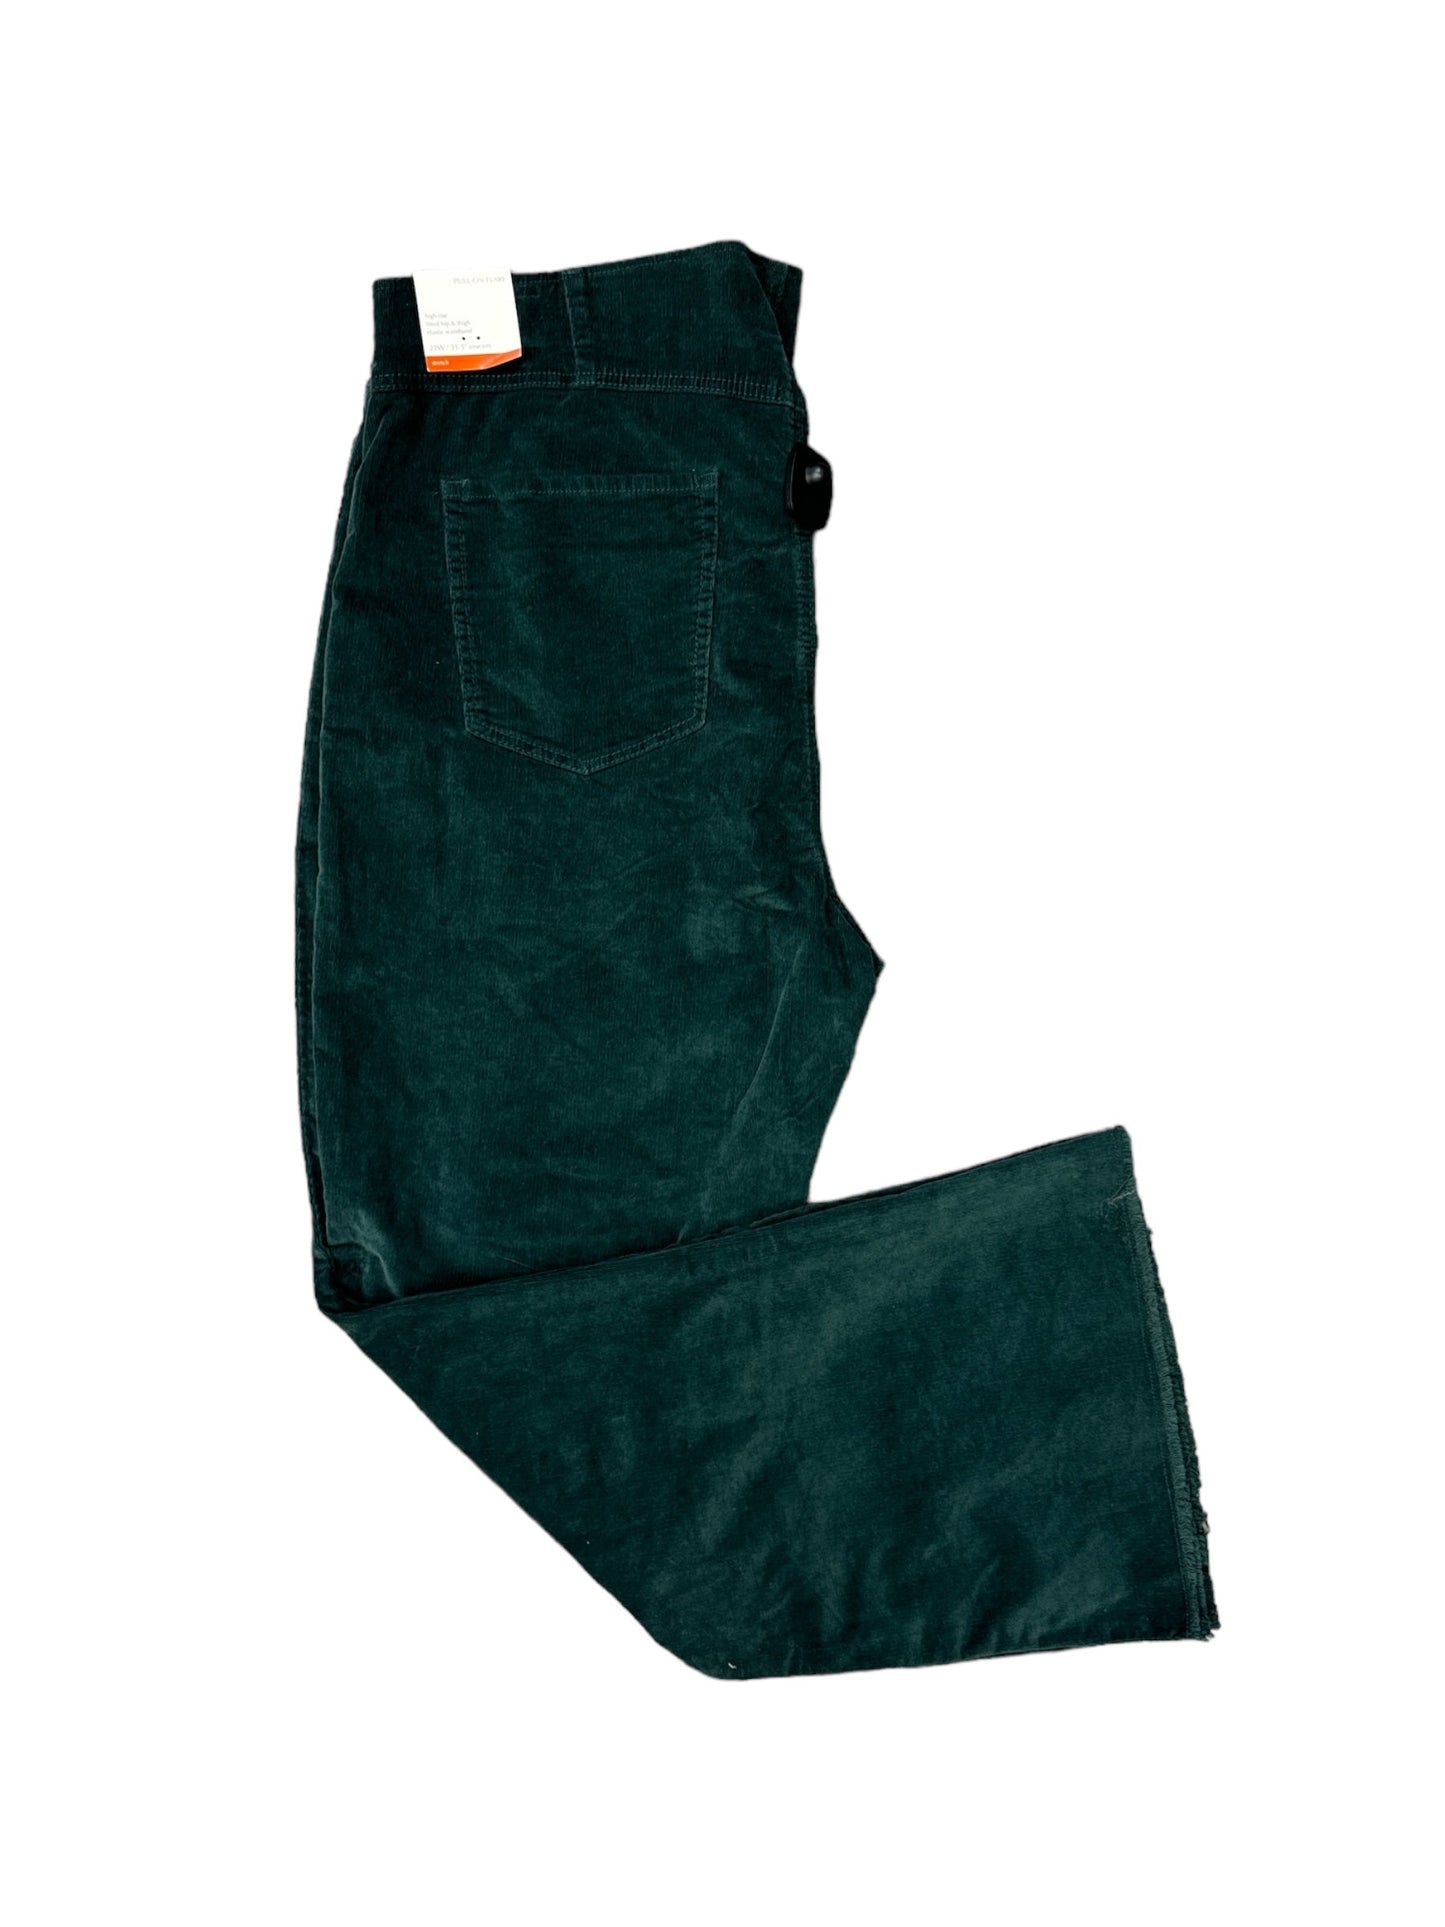 Green Pants Corduroy Knox Rose, Size 22w